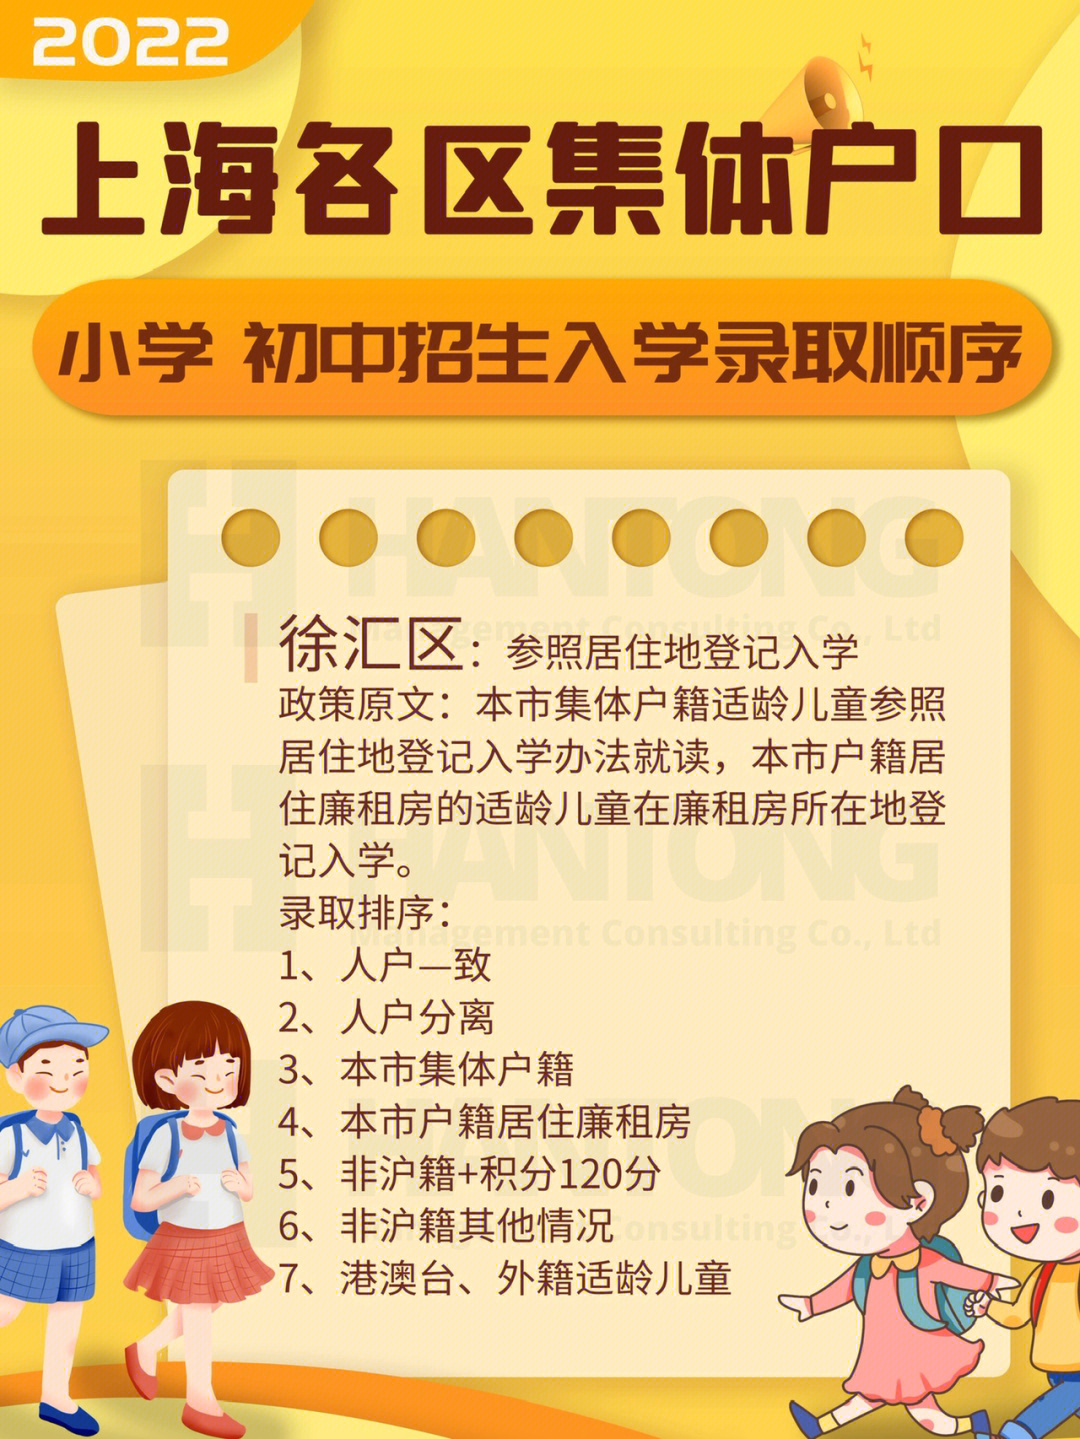 上海市社区公共户小学初中招生入学录取顺序